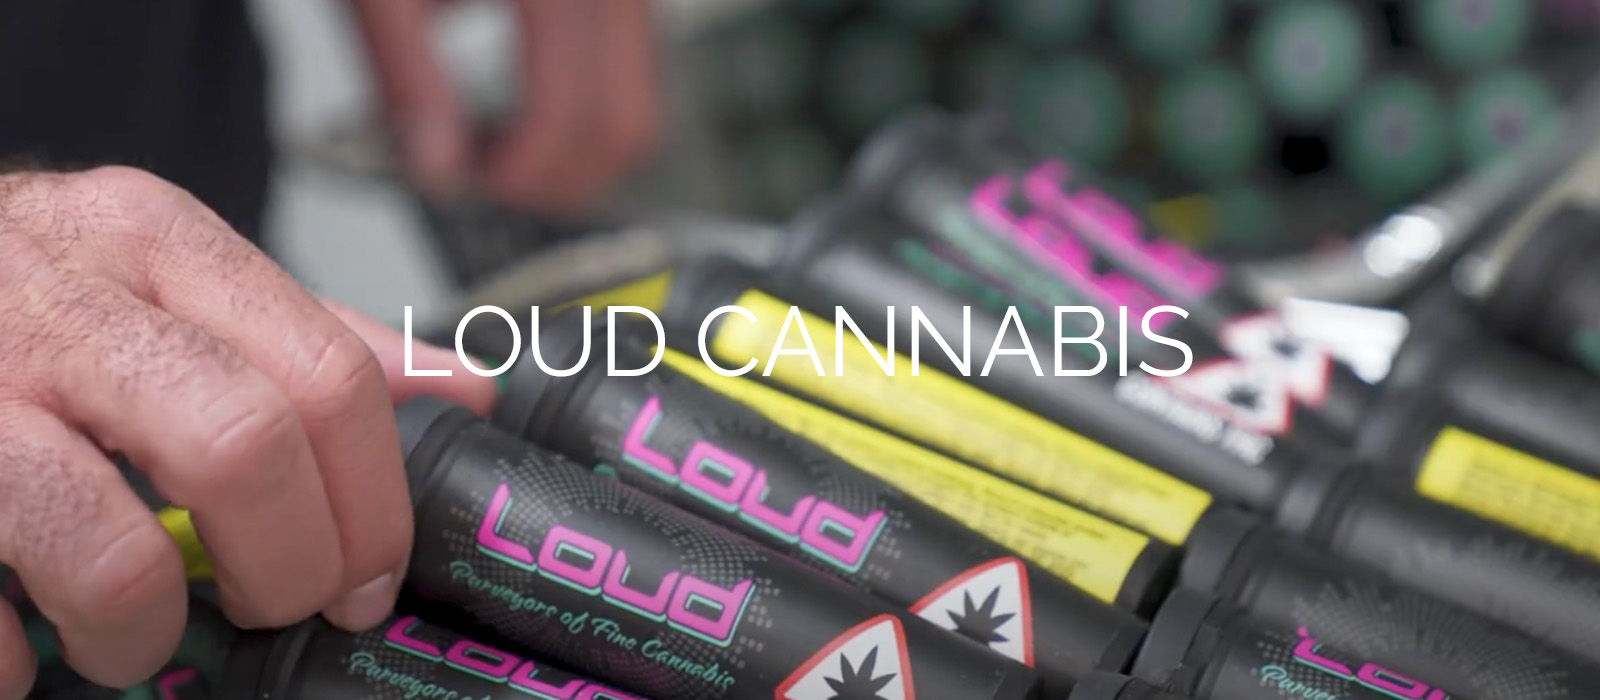 Loud Cannabis